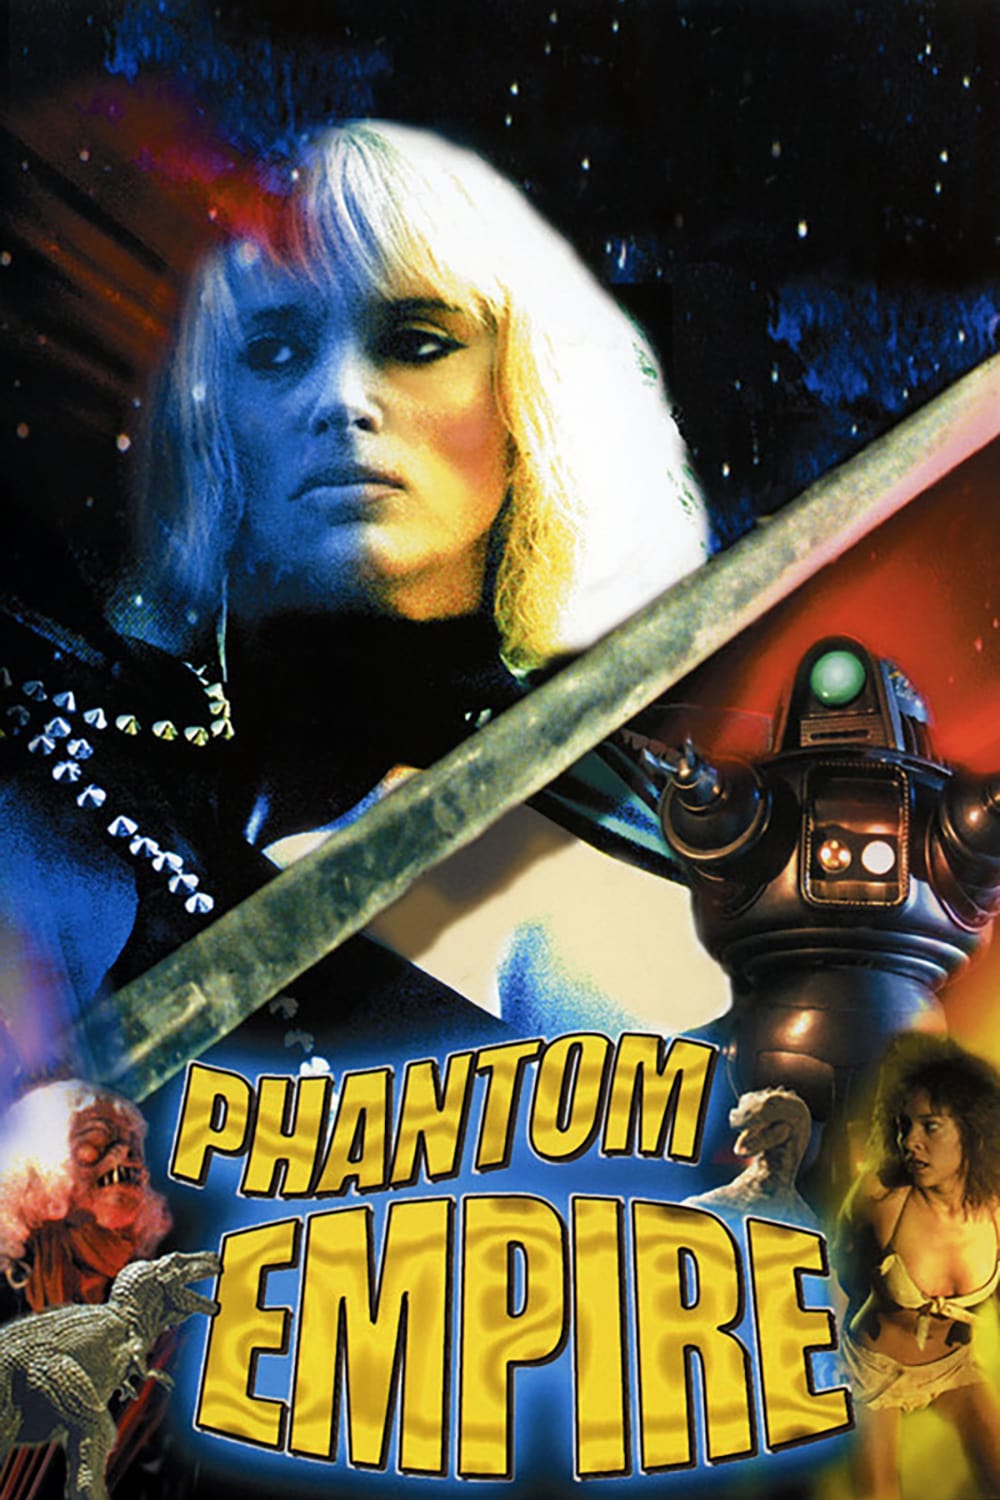 The Phantom Empire (1988)